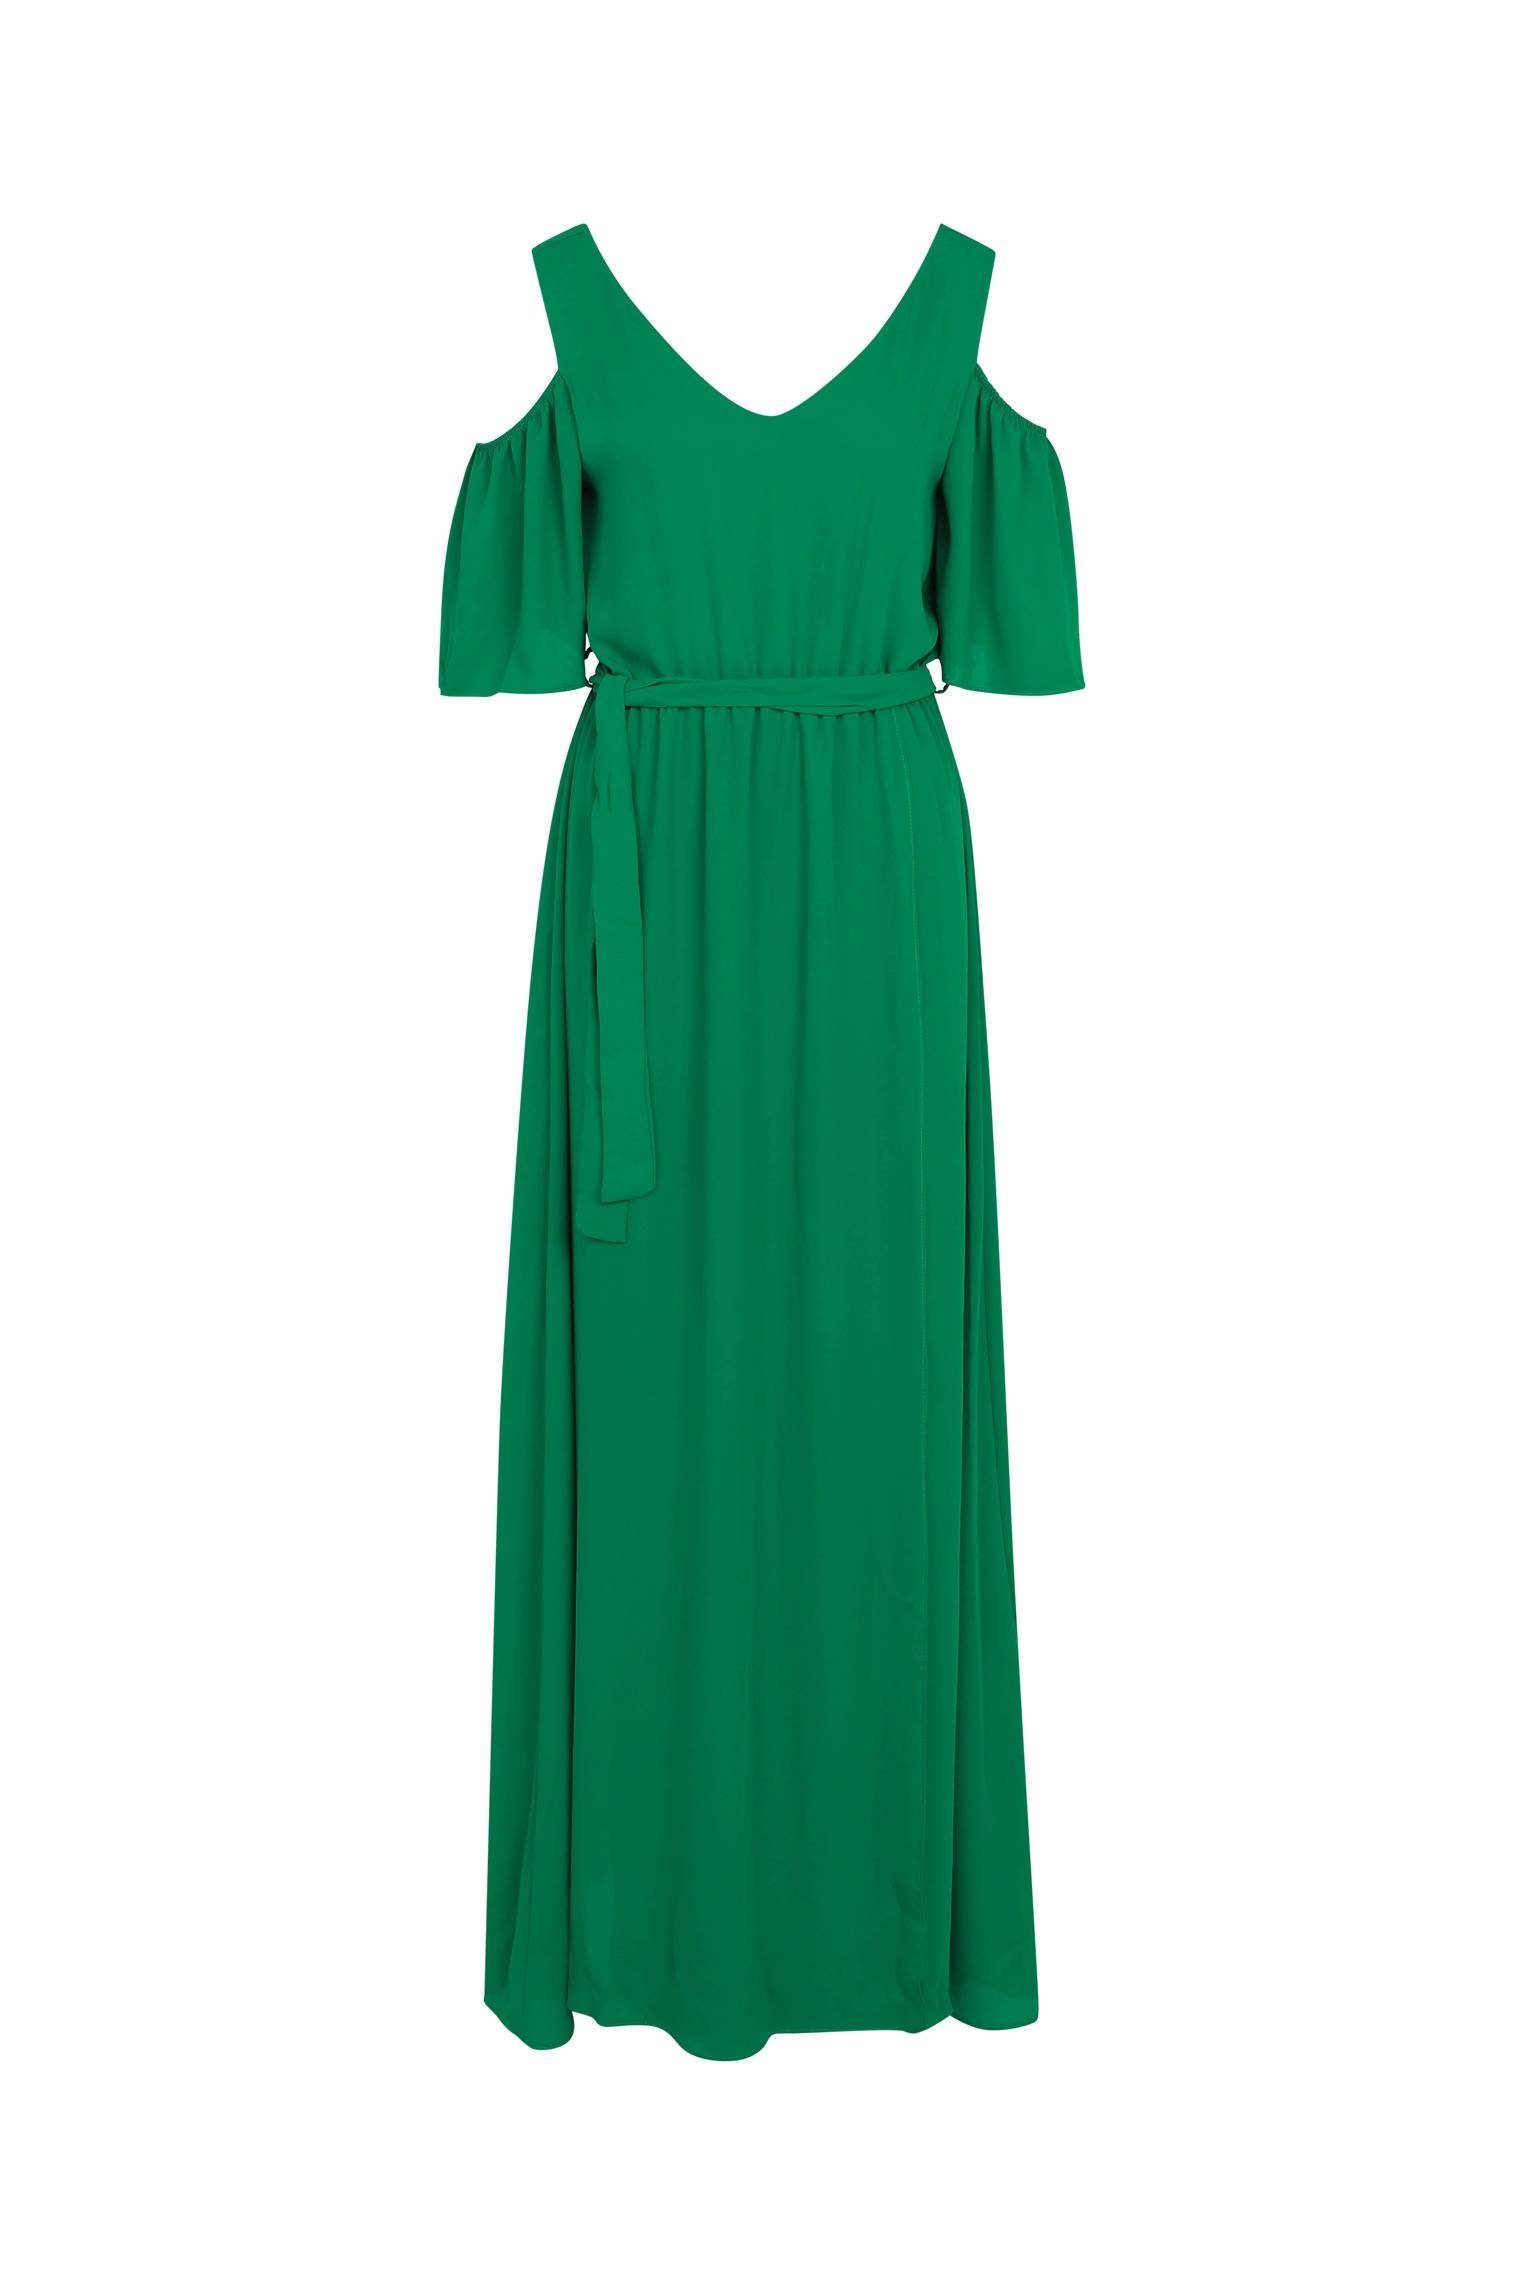 Cassis Etuikleid Langes, Unifarbenes Und Schulterfreies Kleid grün